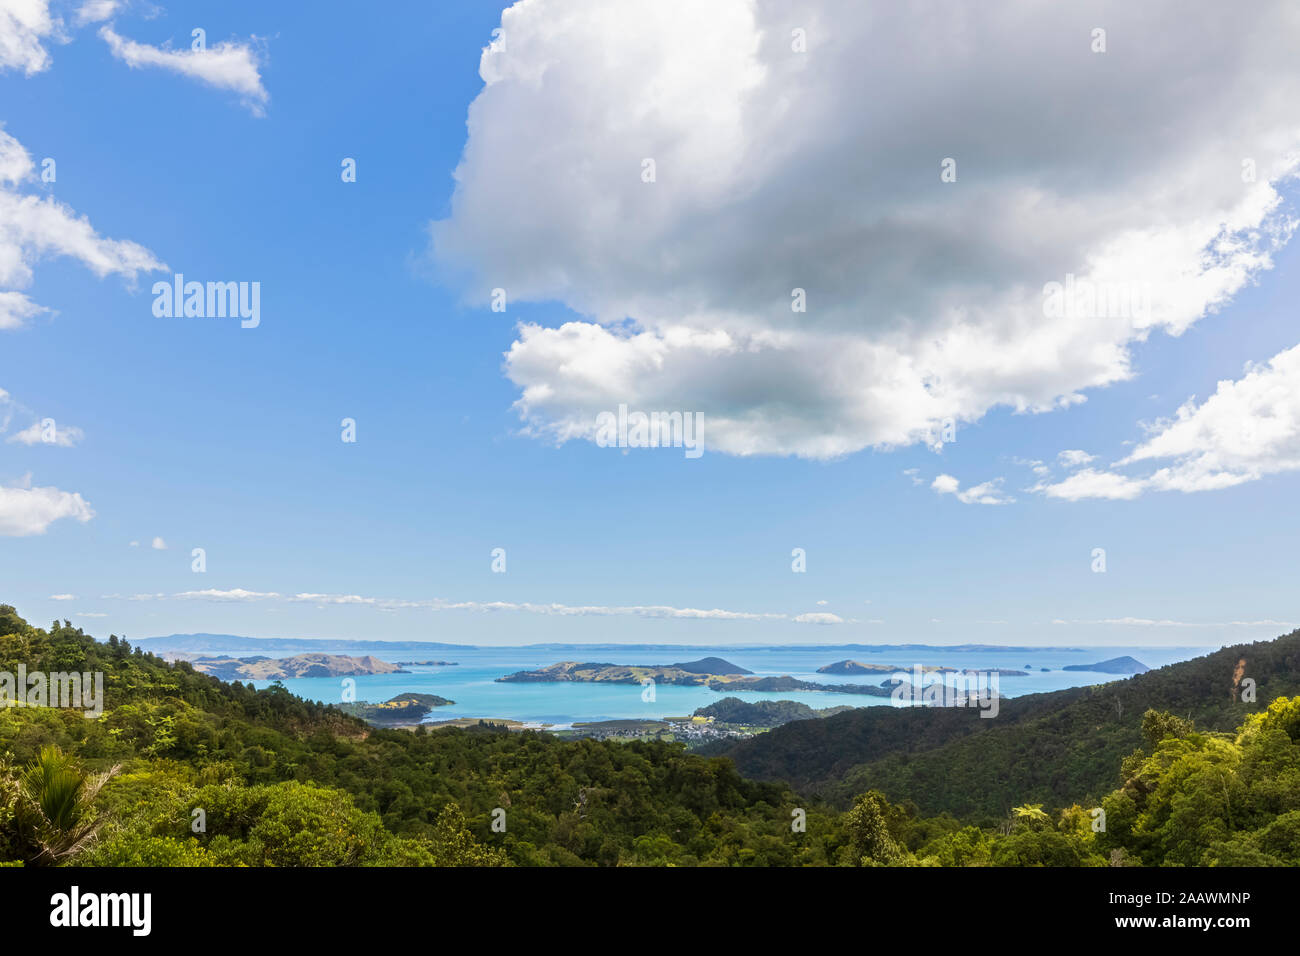 Nuova Zelanda, Isola del nord, Waikato, paesaggio panoramico contro il cielo nuvoloso Foto Stock